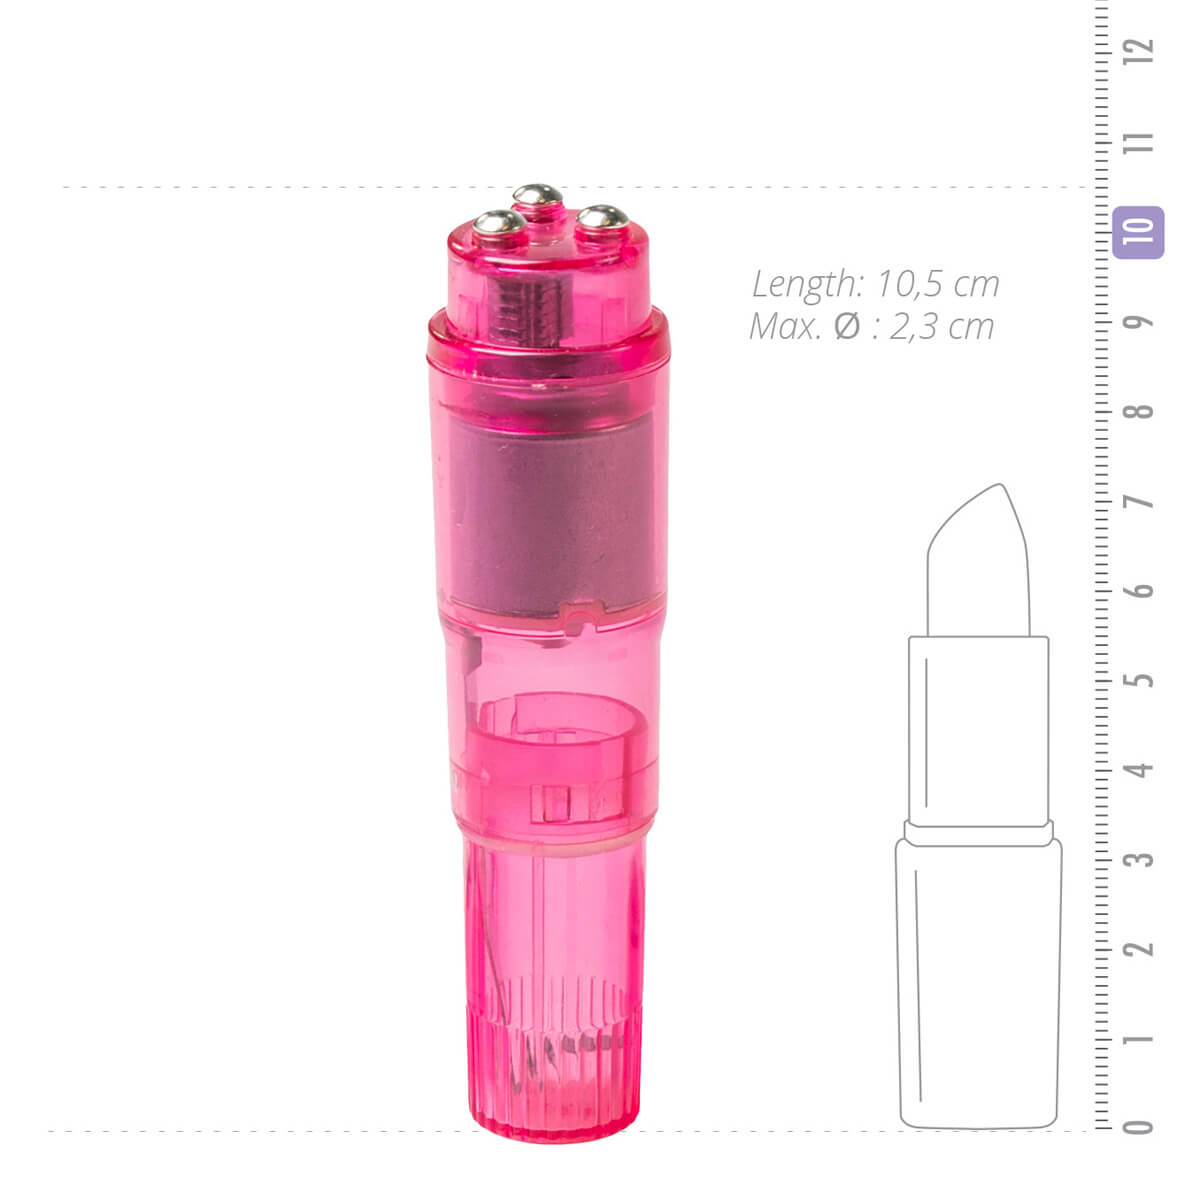 Easytoys Pocket Rocket - vibrátoros szett - pink (5 részes) kép